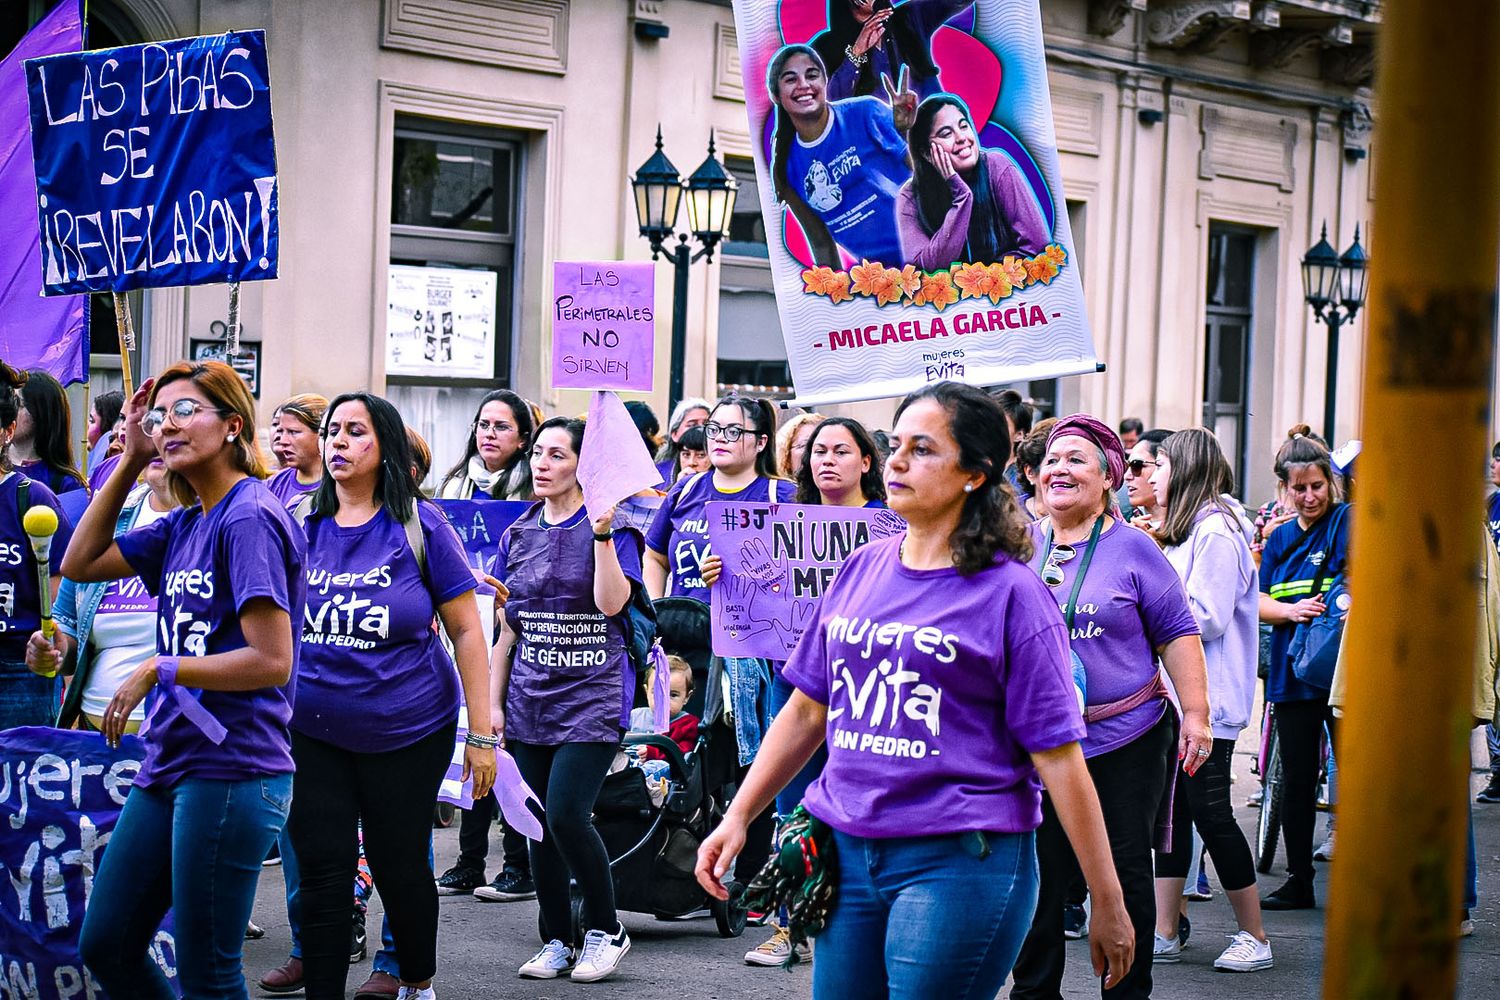 El Movimiento Evita lanza el partido político “La patria de los comunes” en San Pedro